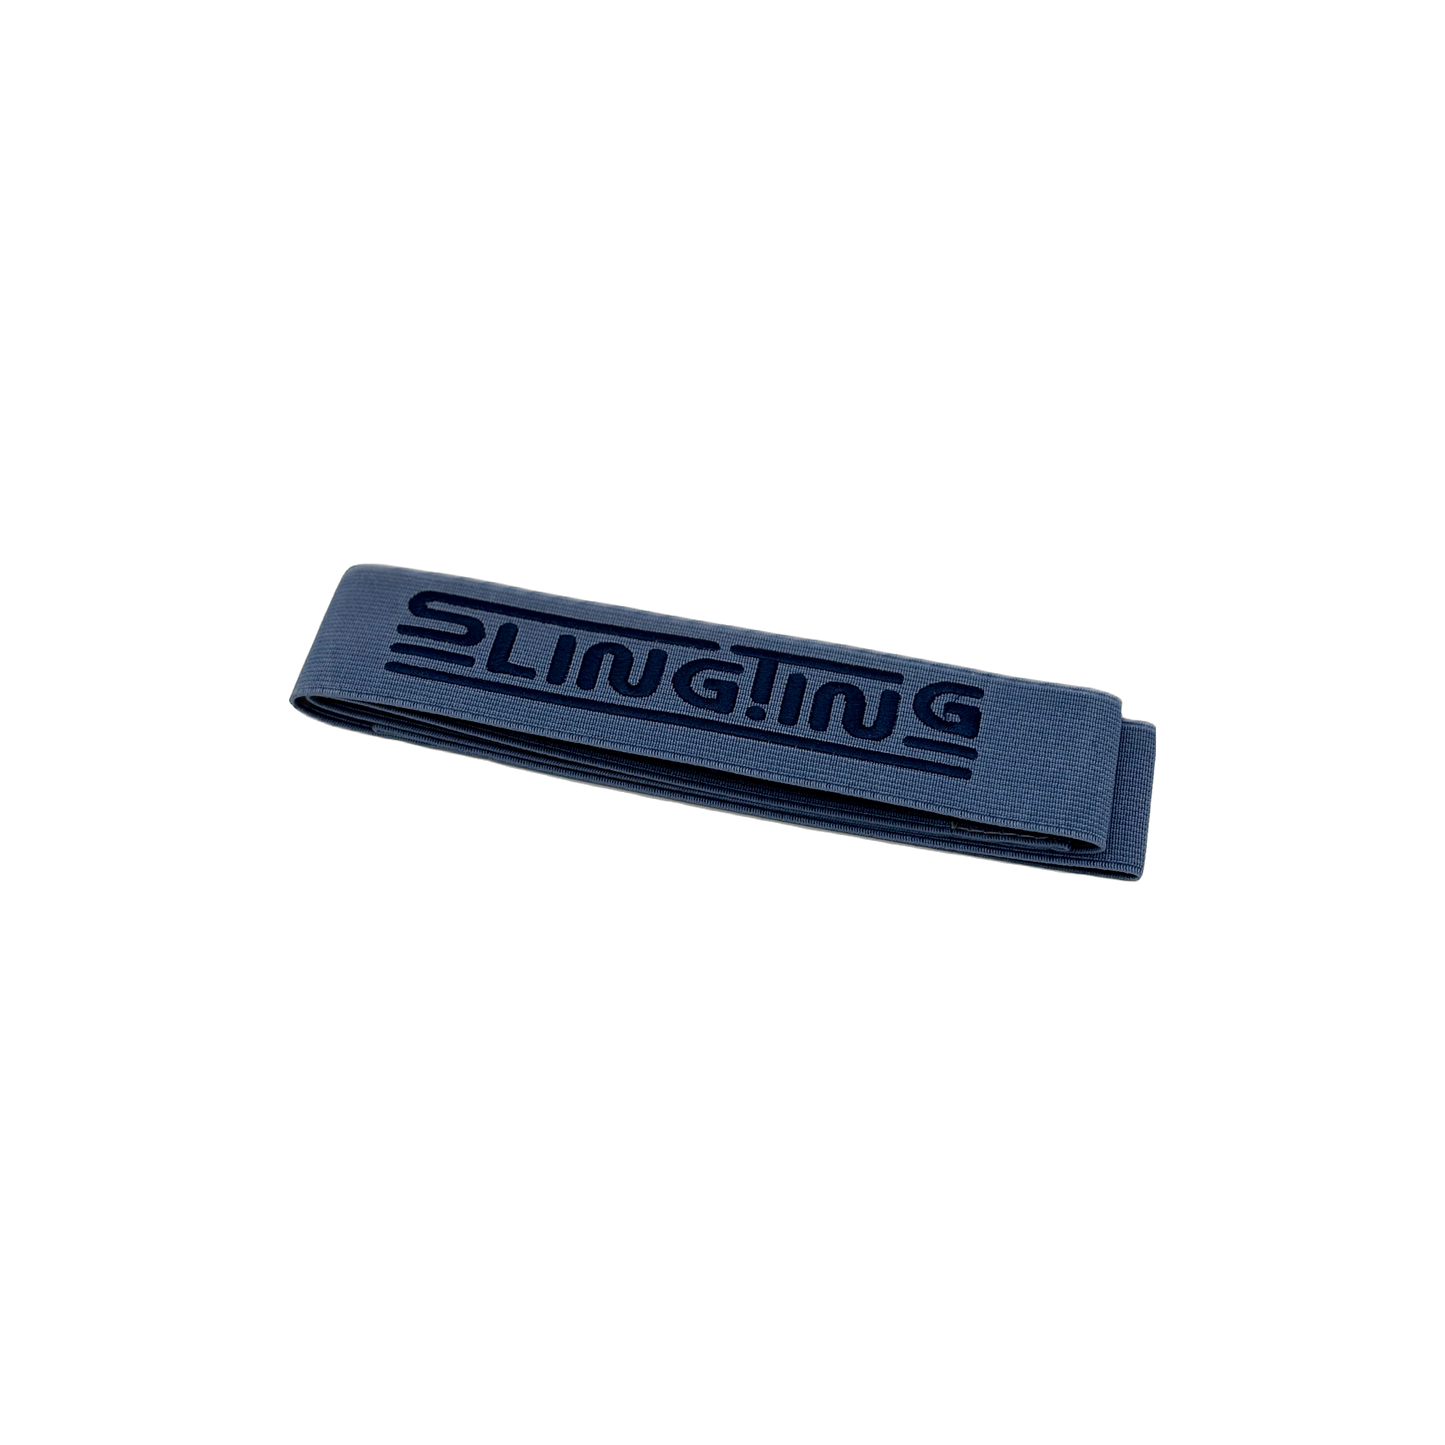 Slingting - Skateboard Sling - Navy (Navy Embroidery)